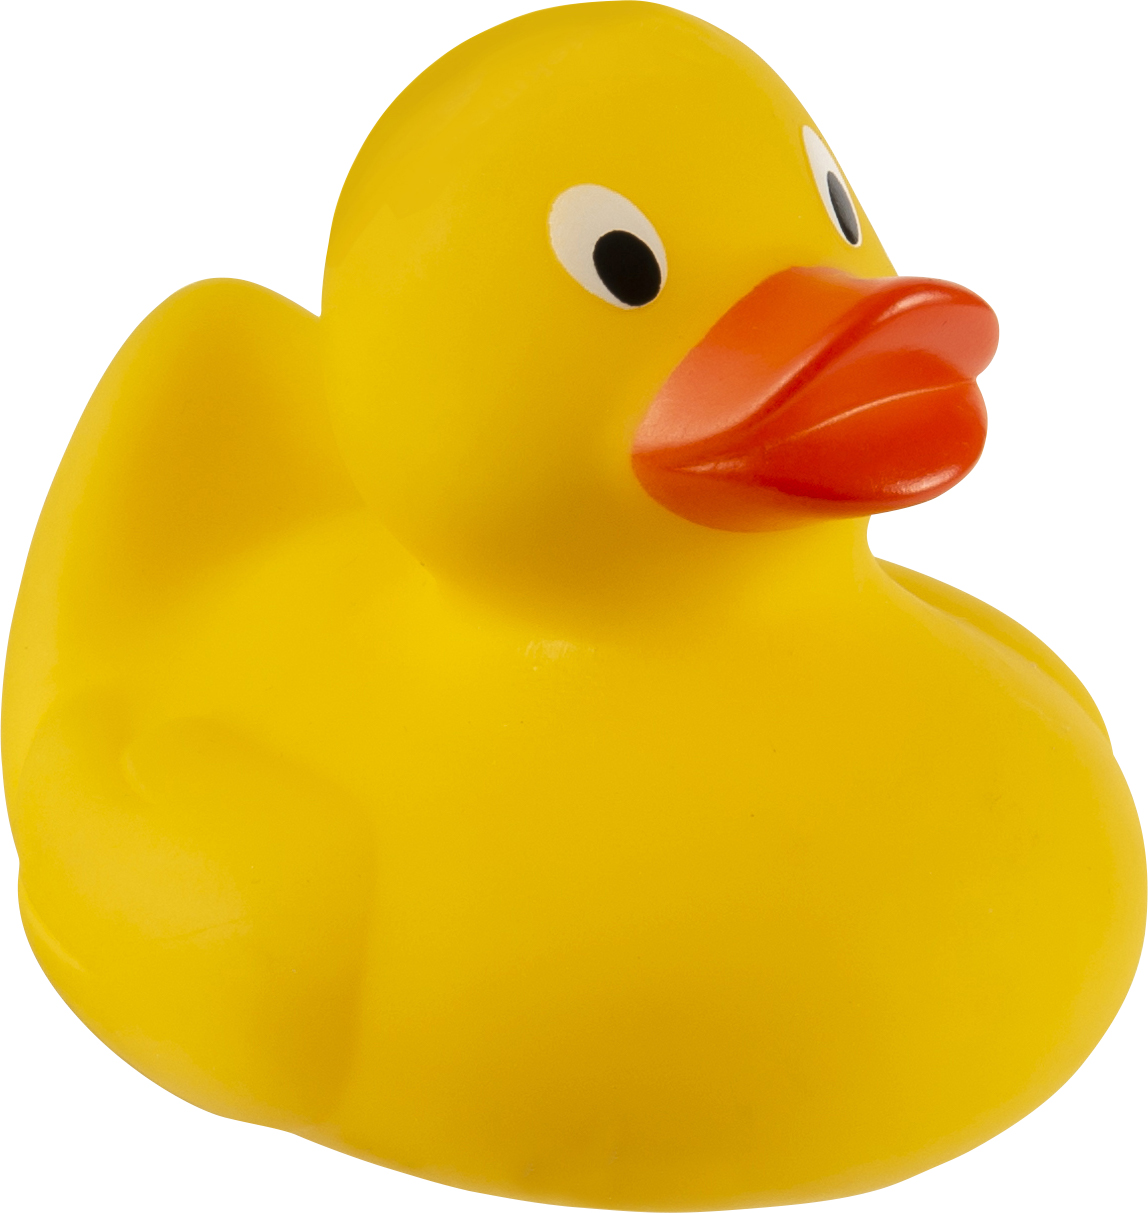 008238 006999999 3d045 rgt pro01 fal - Rubber duck